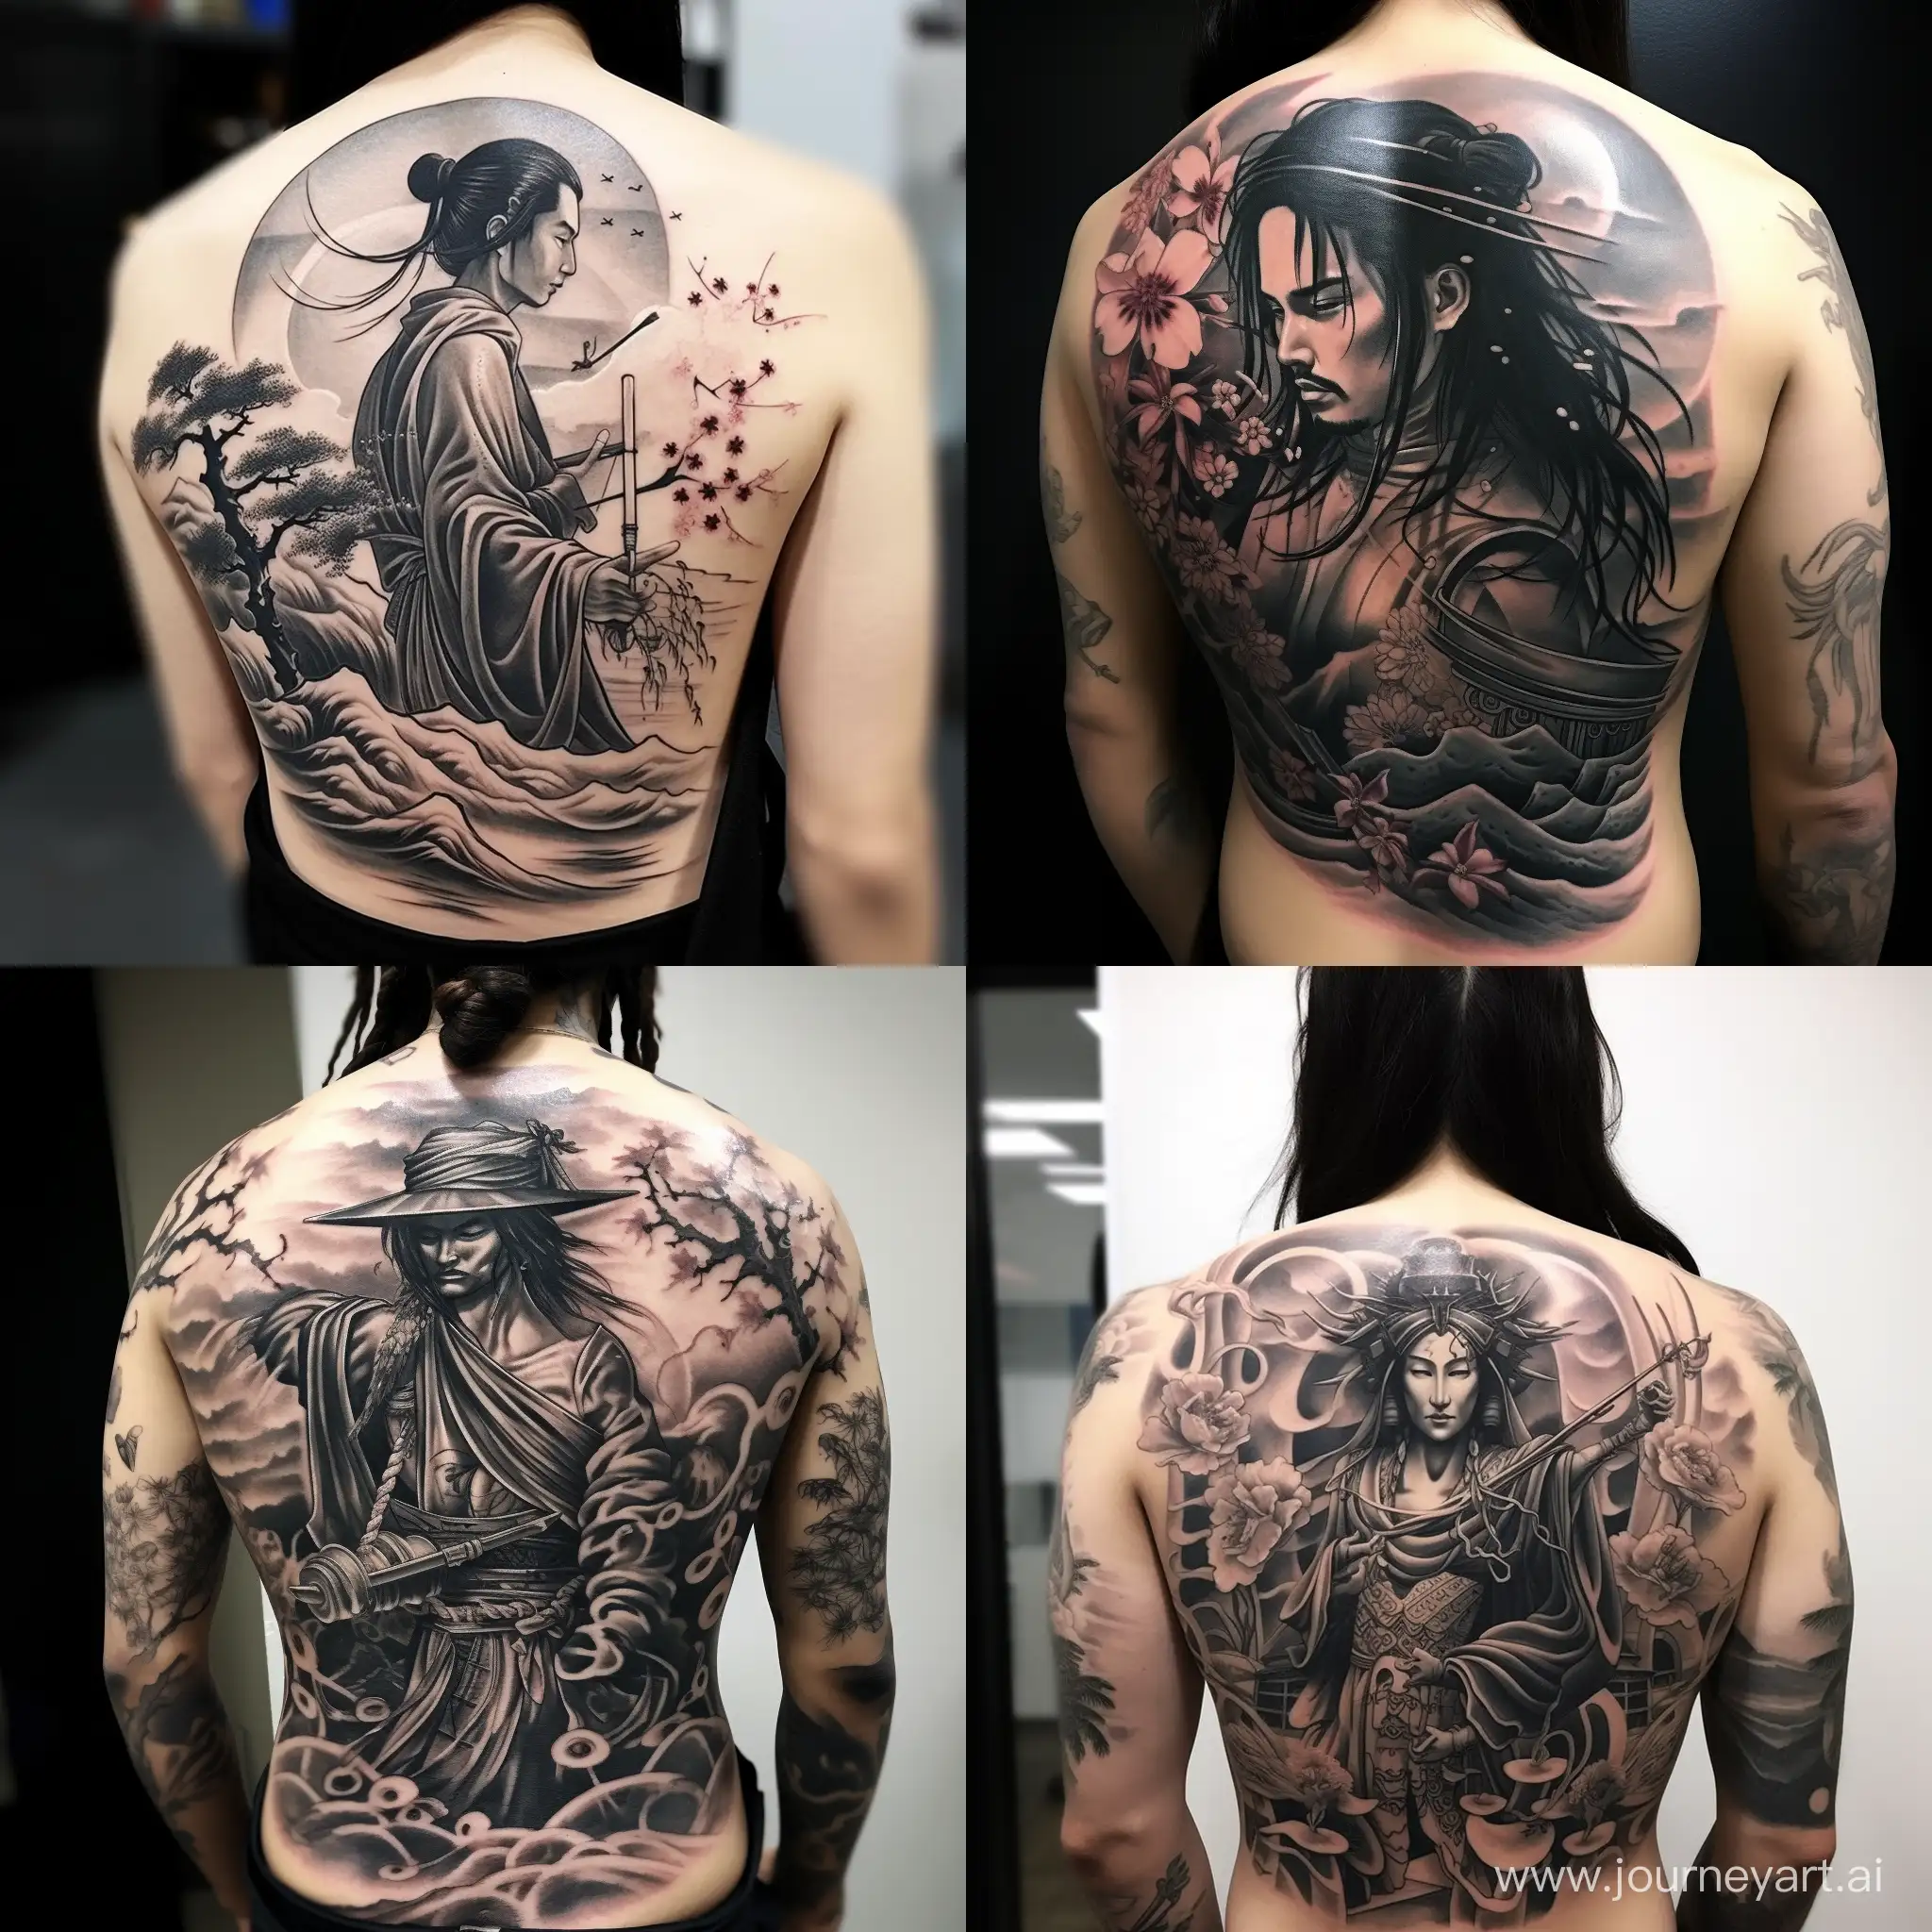 Symbolic-Samurai-Tattoo-in-11-Aspect-Ratio